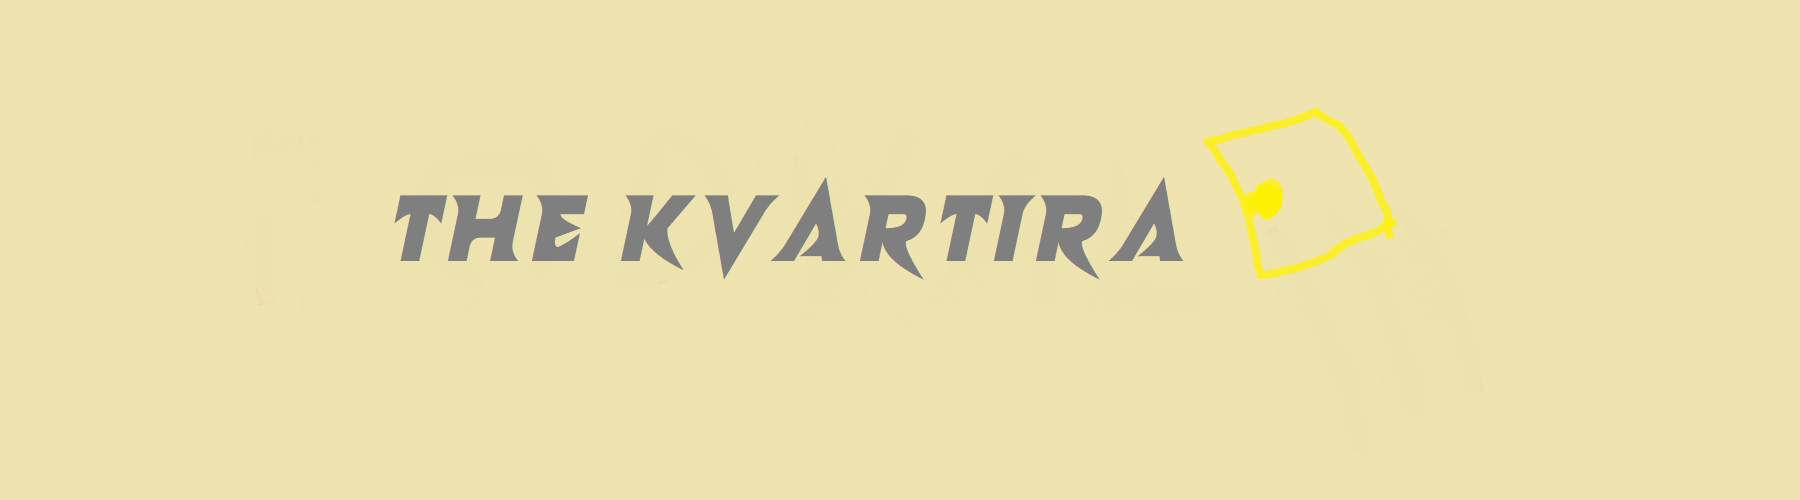 The Kvartira